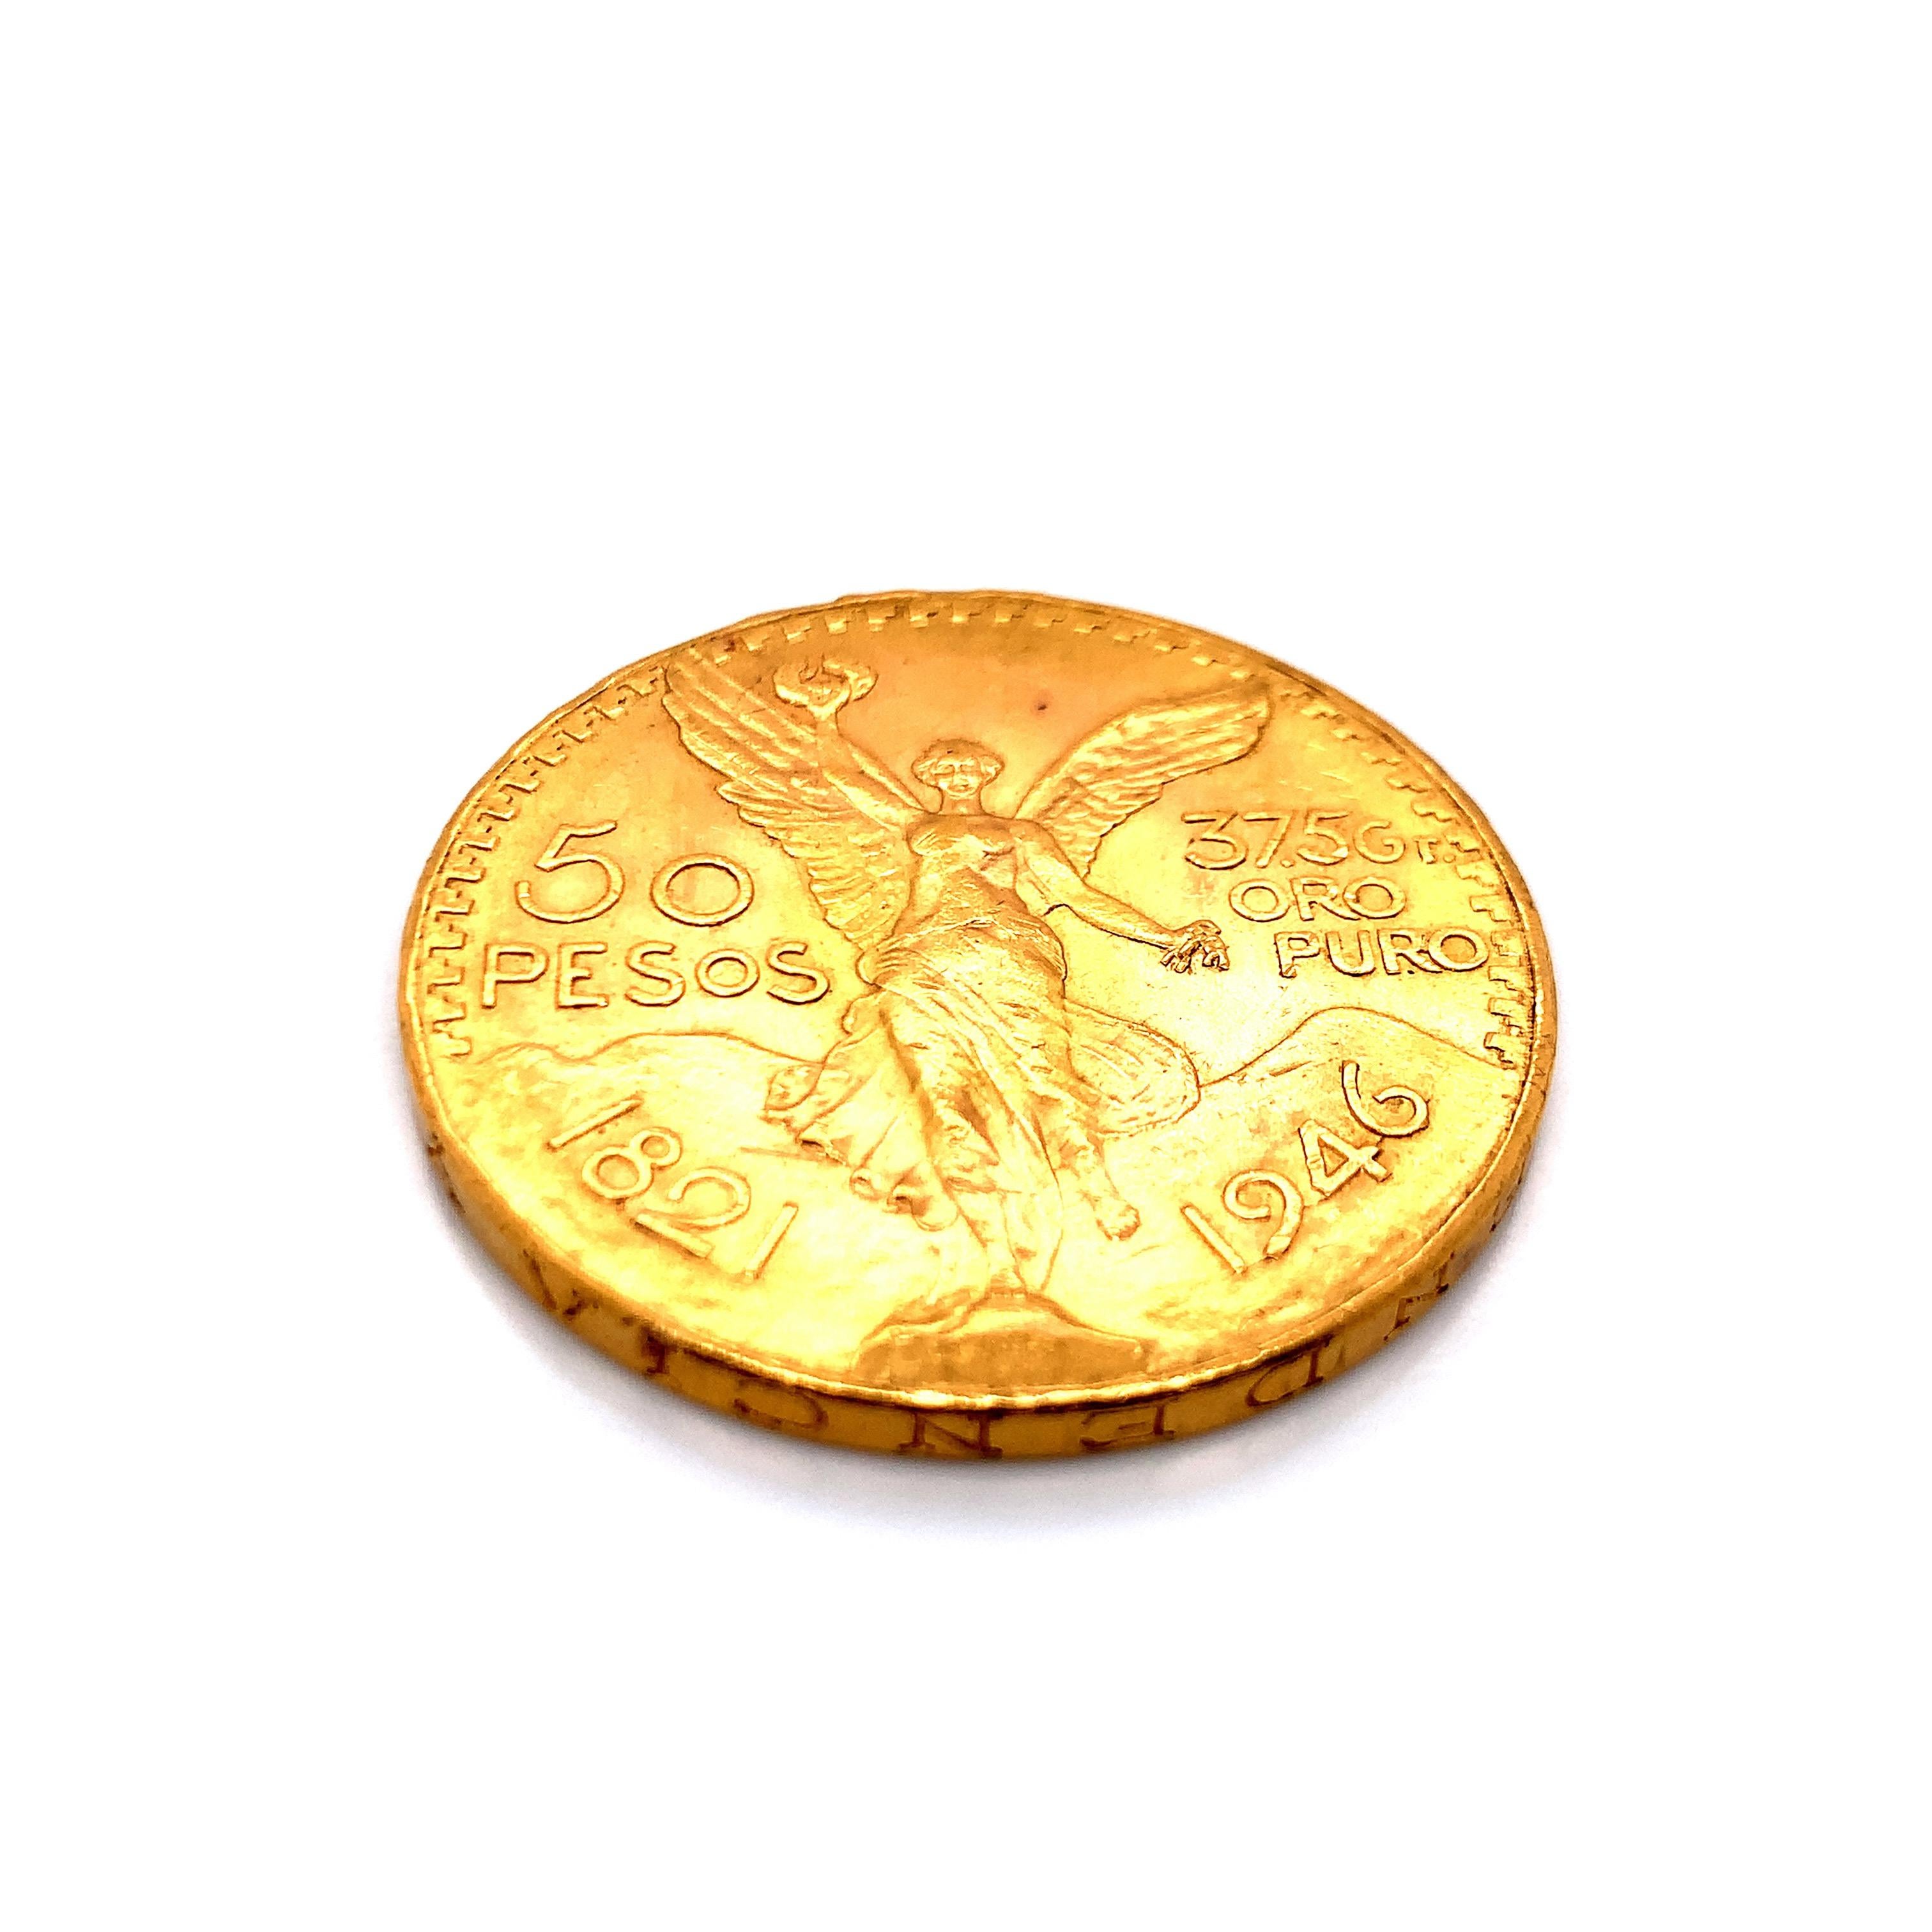 1947 50 pesos gold coin